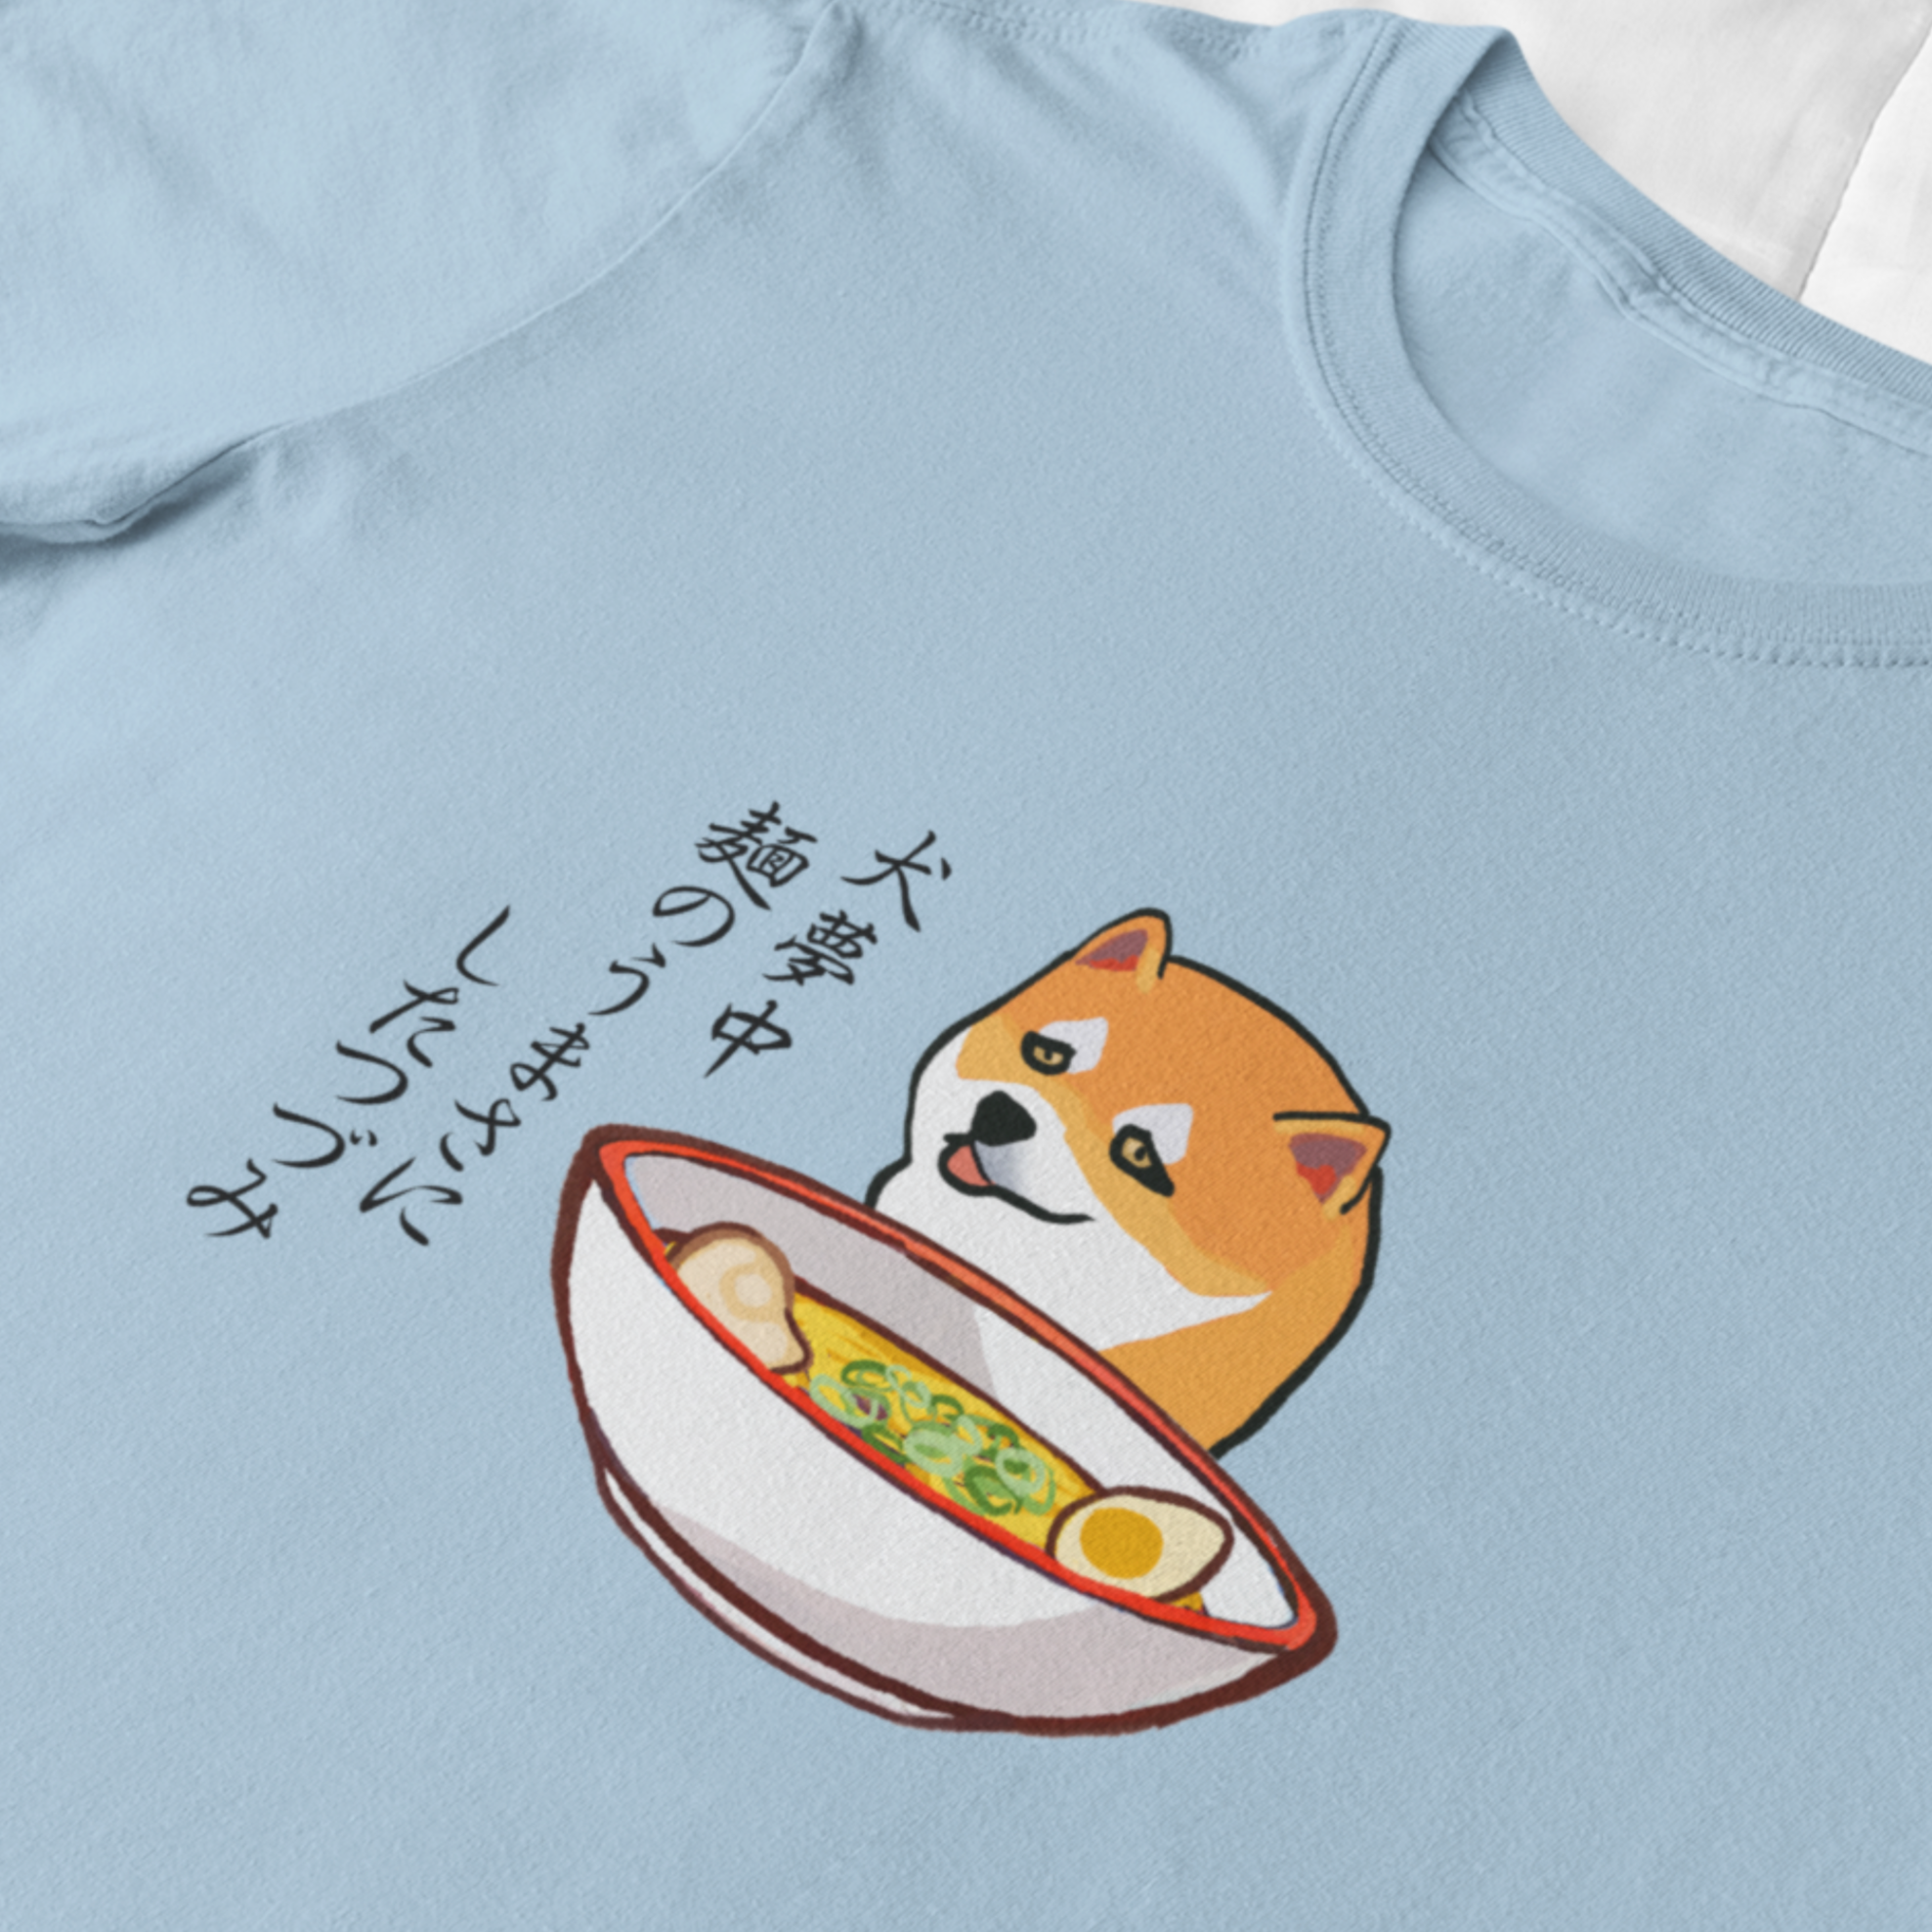 Ramen T-shirt: Shiba Inu Ramen Art Haiku - Japanese Foodie Shirt with Unique Ramen Design